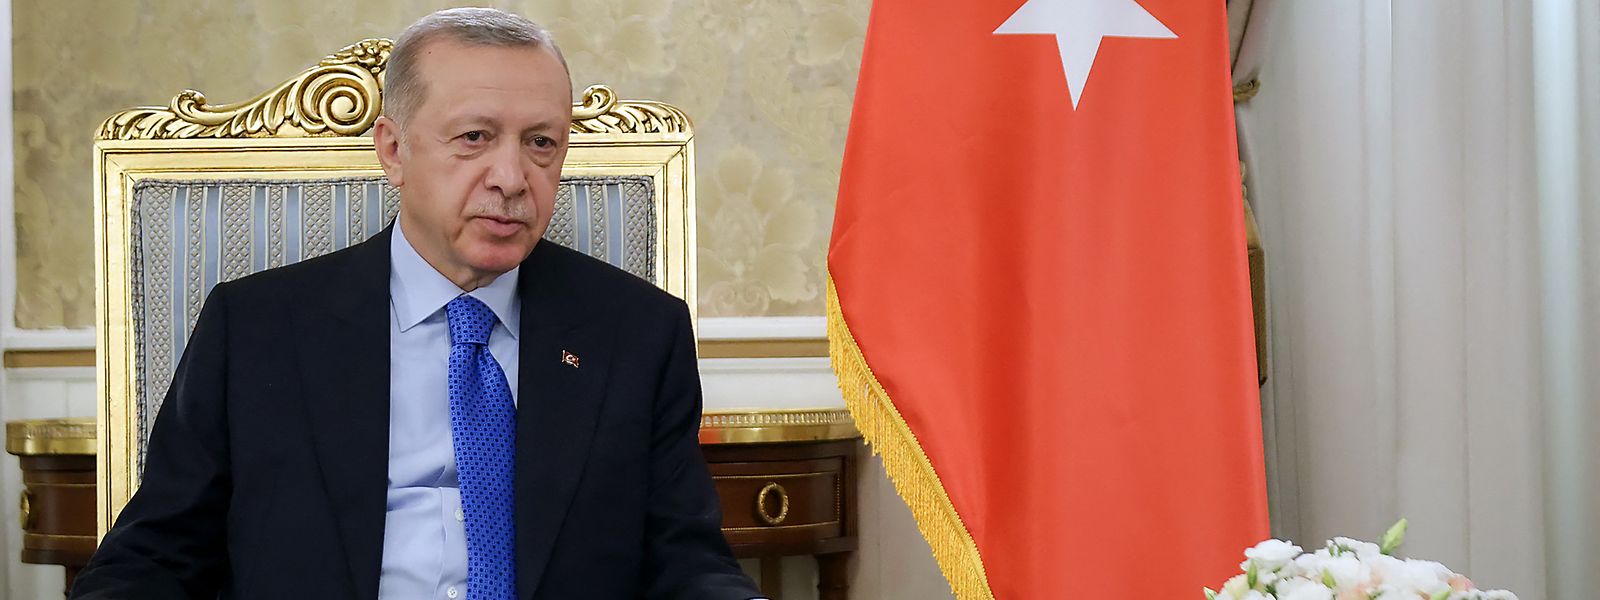 Der türkische Präsident Erdogan kann die Erweiterung der NATO blockieren.